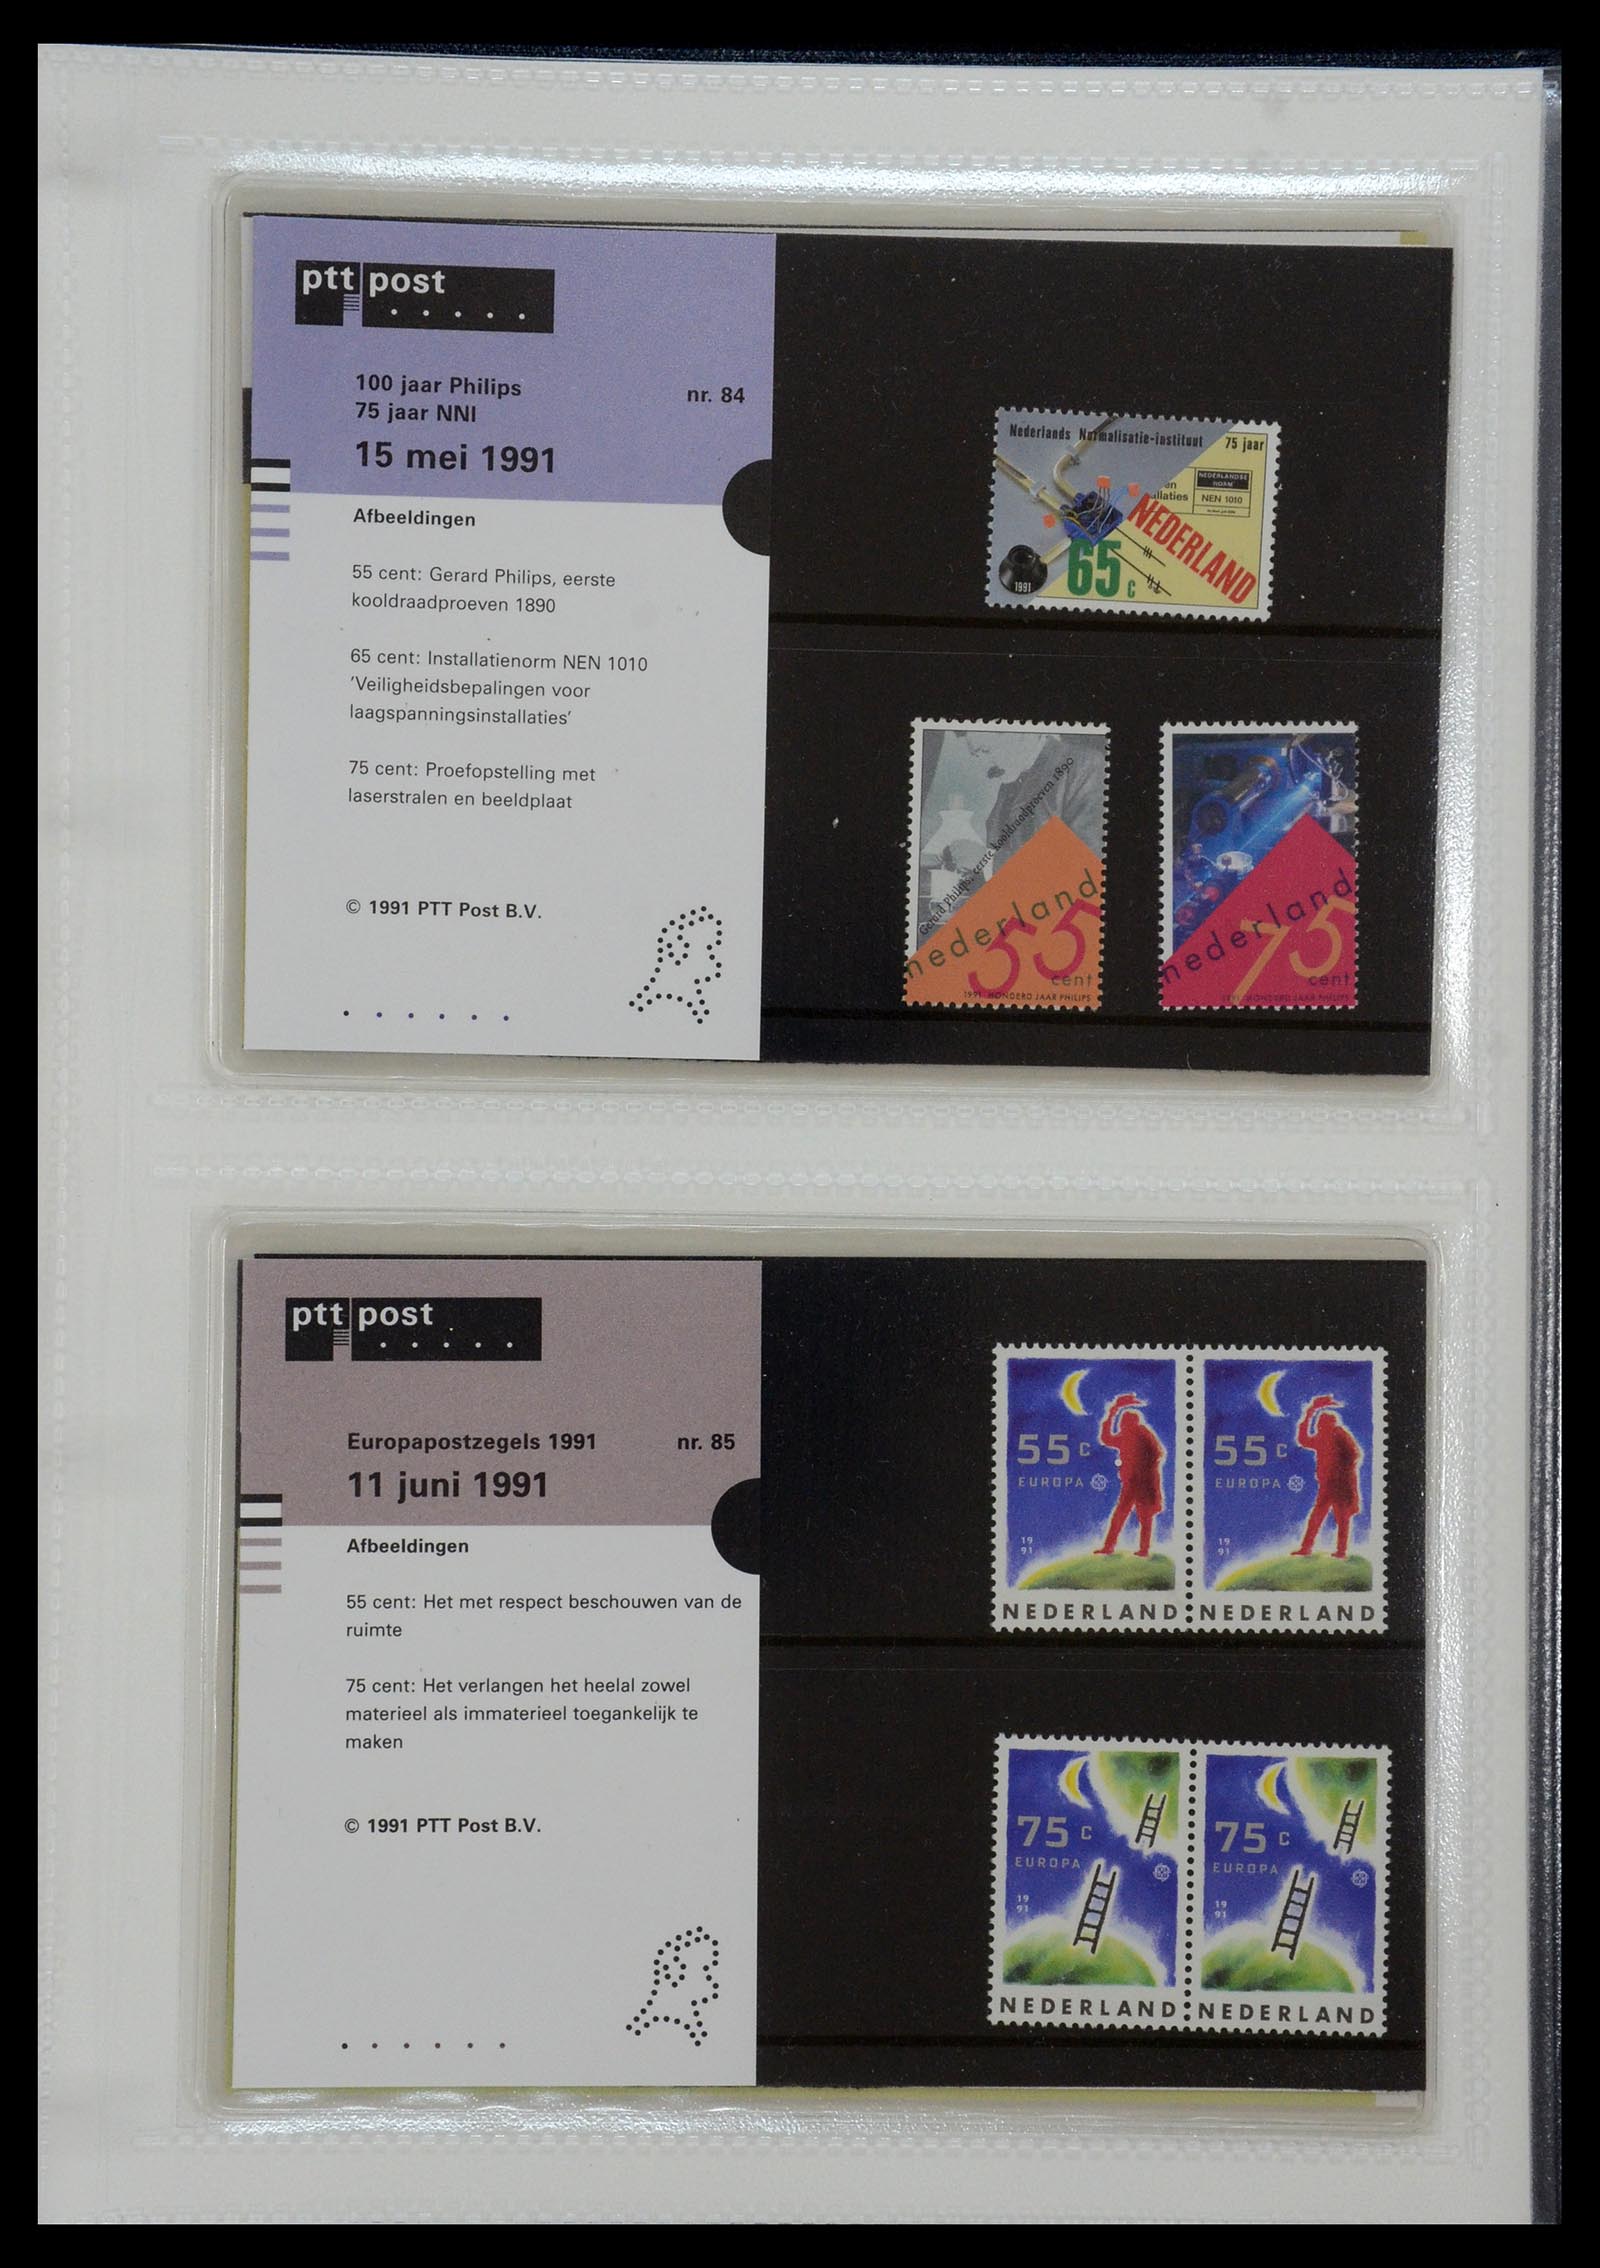 35144 043 - Stamp Collection 35144 Netherlands PTT presentation packs 1982-2021!